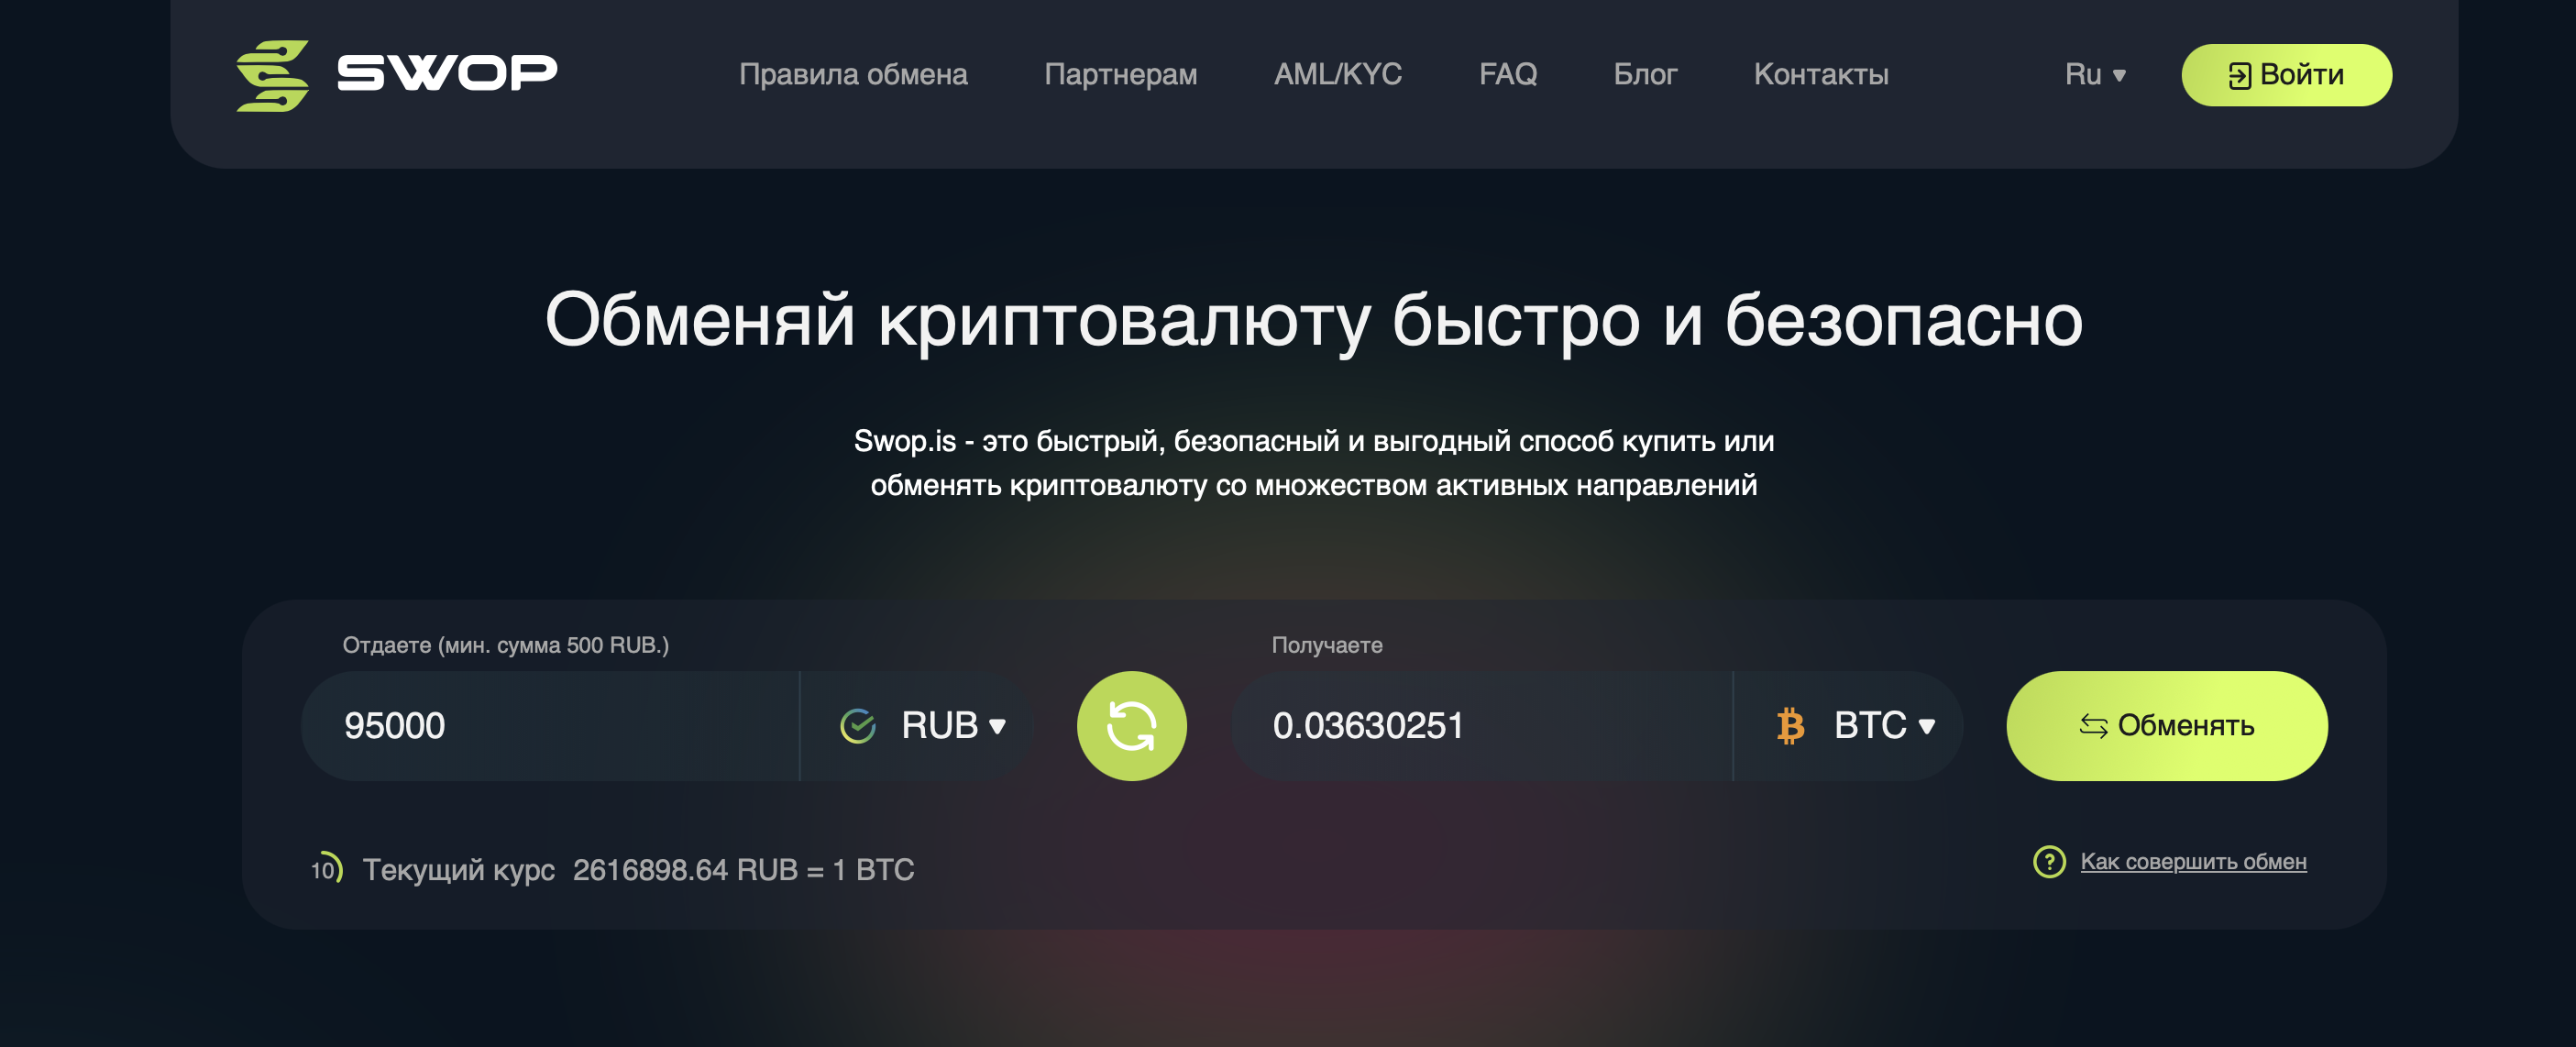 фото: Как использовать SWOP для покупки и продажи криптовалюты в России: подробная инструкция